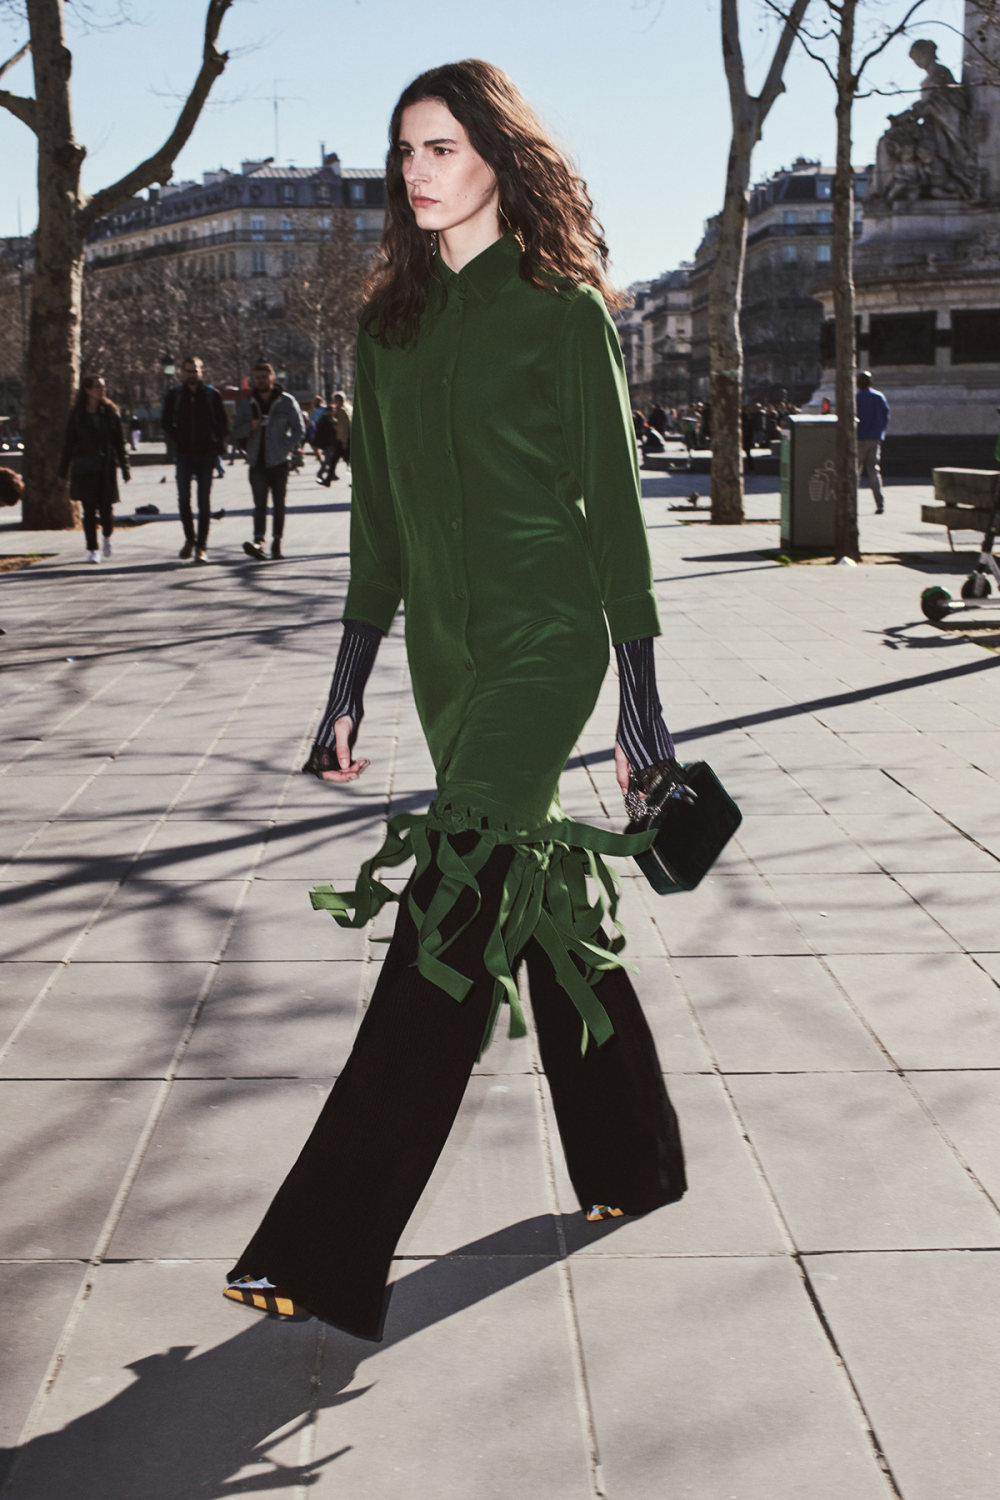 Sonia Rykiel时装系列细节如威尔士亲王式太阳裤外套的针织翻领-7.jpg